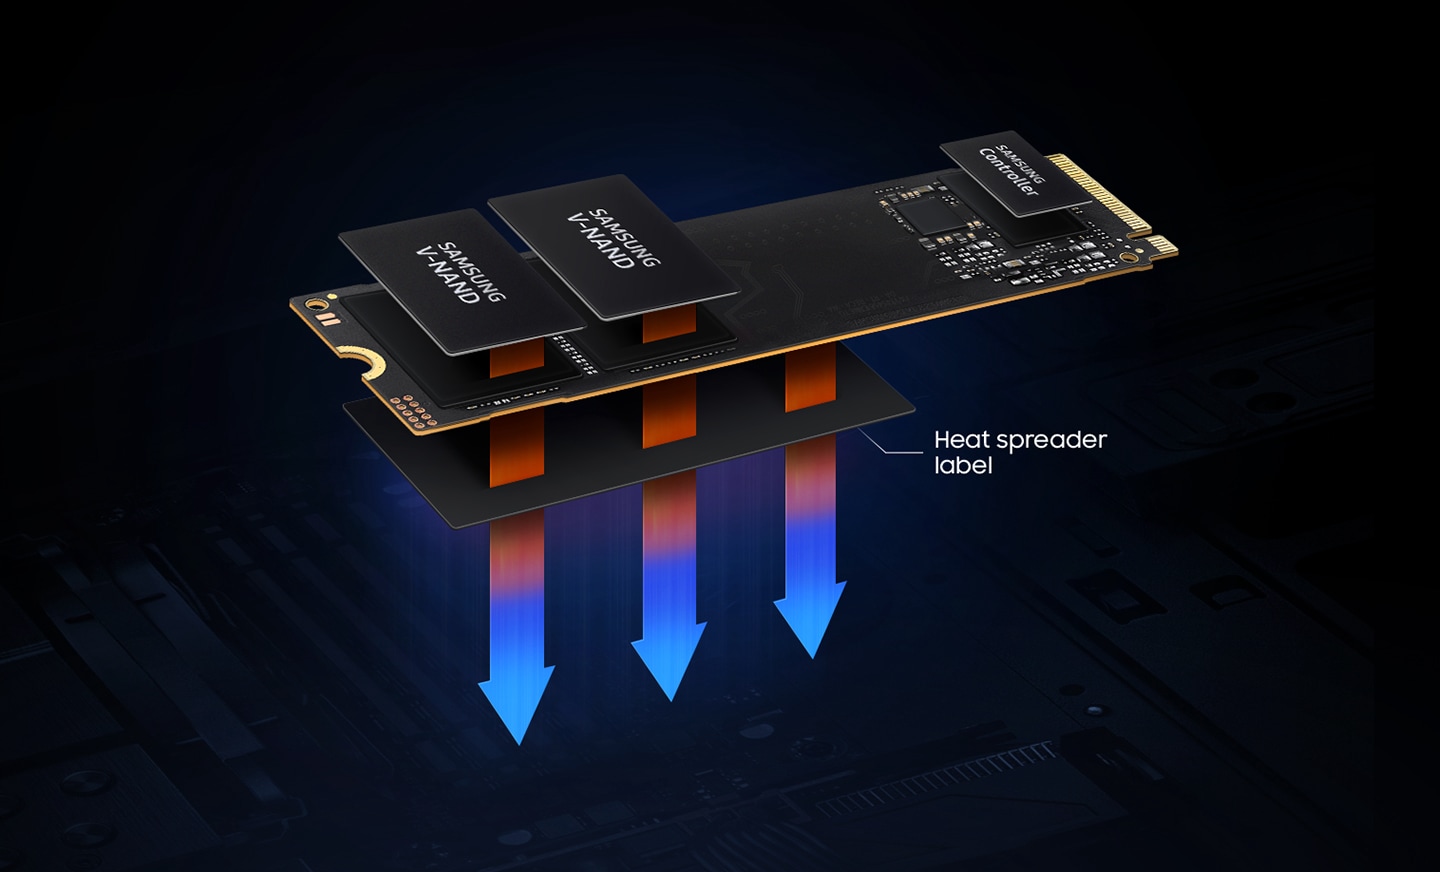 SSDを構成する主な要素であるV-NANDとコントローラで熱が発生します。ヒートスプレッダーラベルは熱を制御し、SSDのパフォーマンスを維持します。